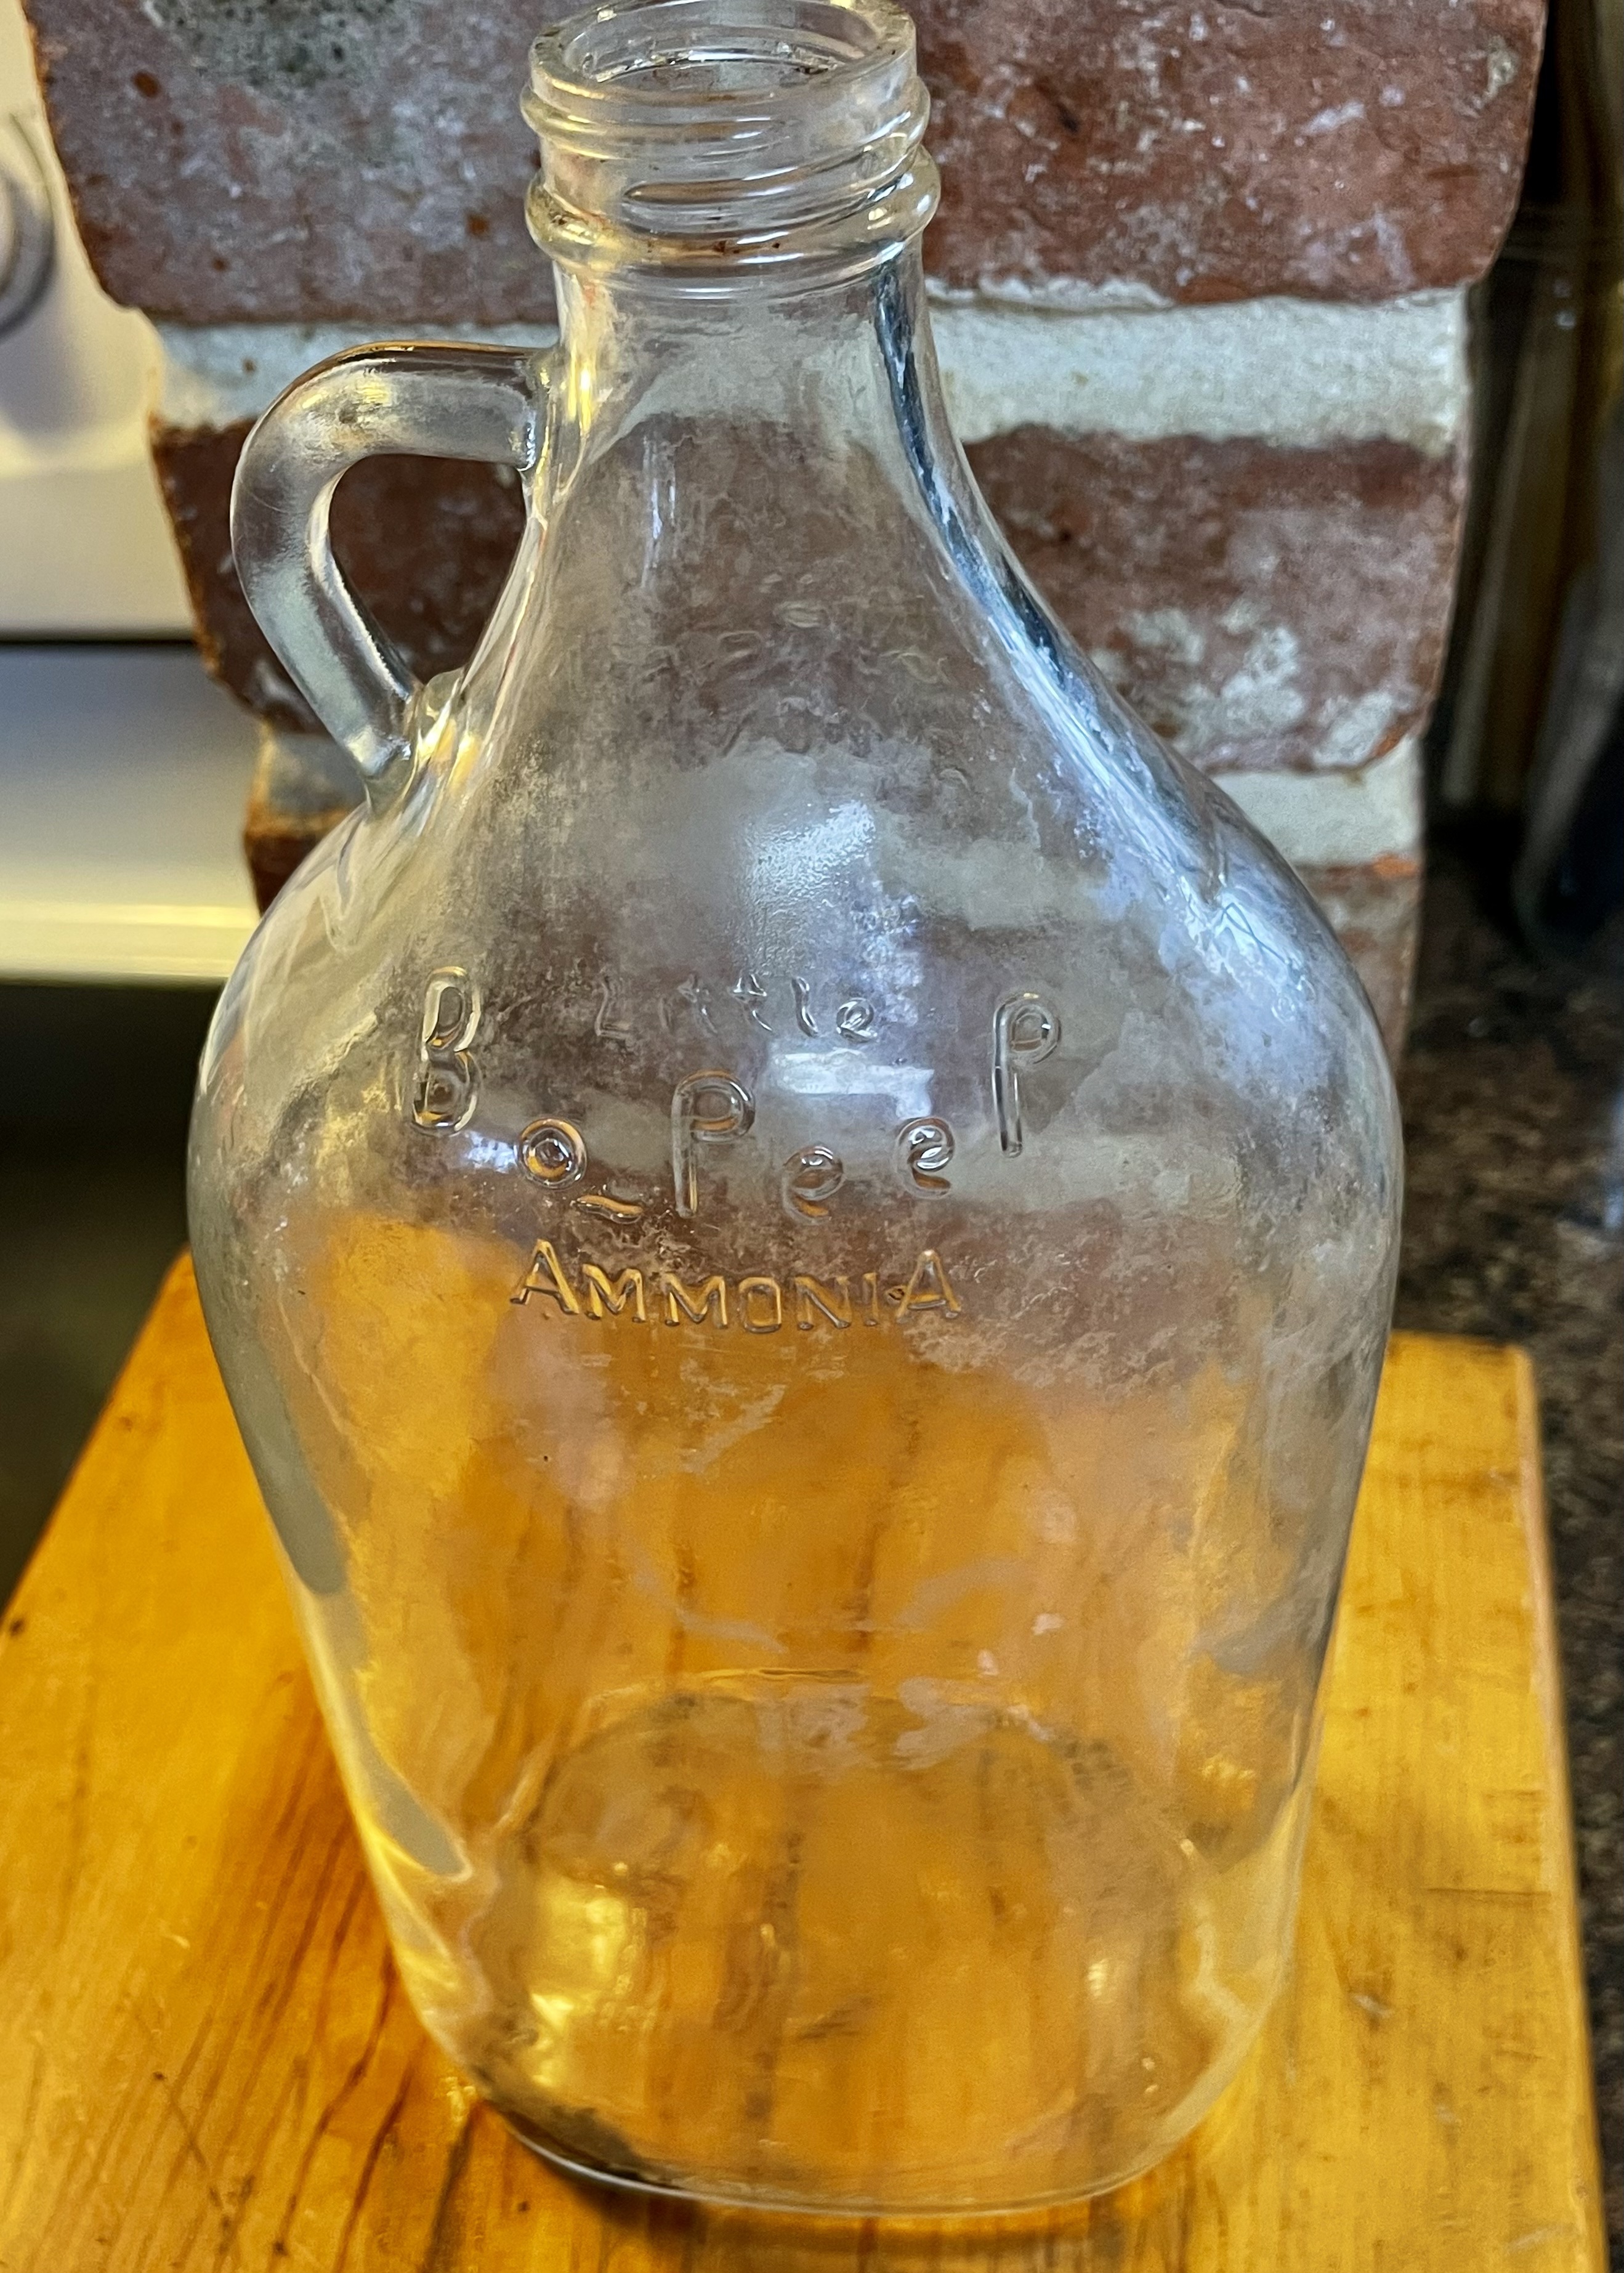 Little Bo Peep Ammonia bottle with handle